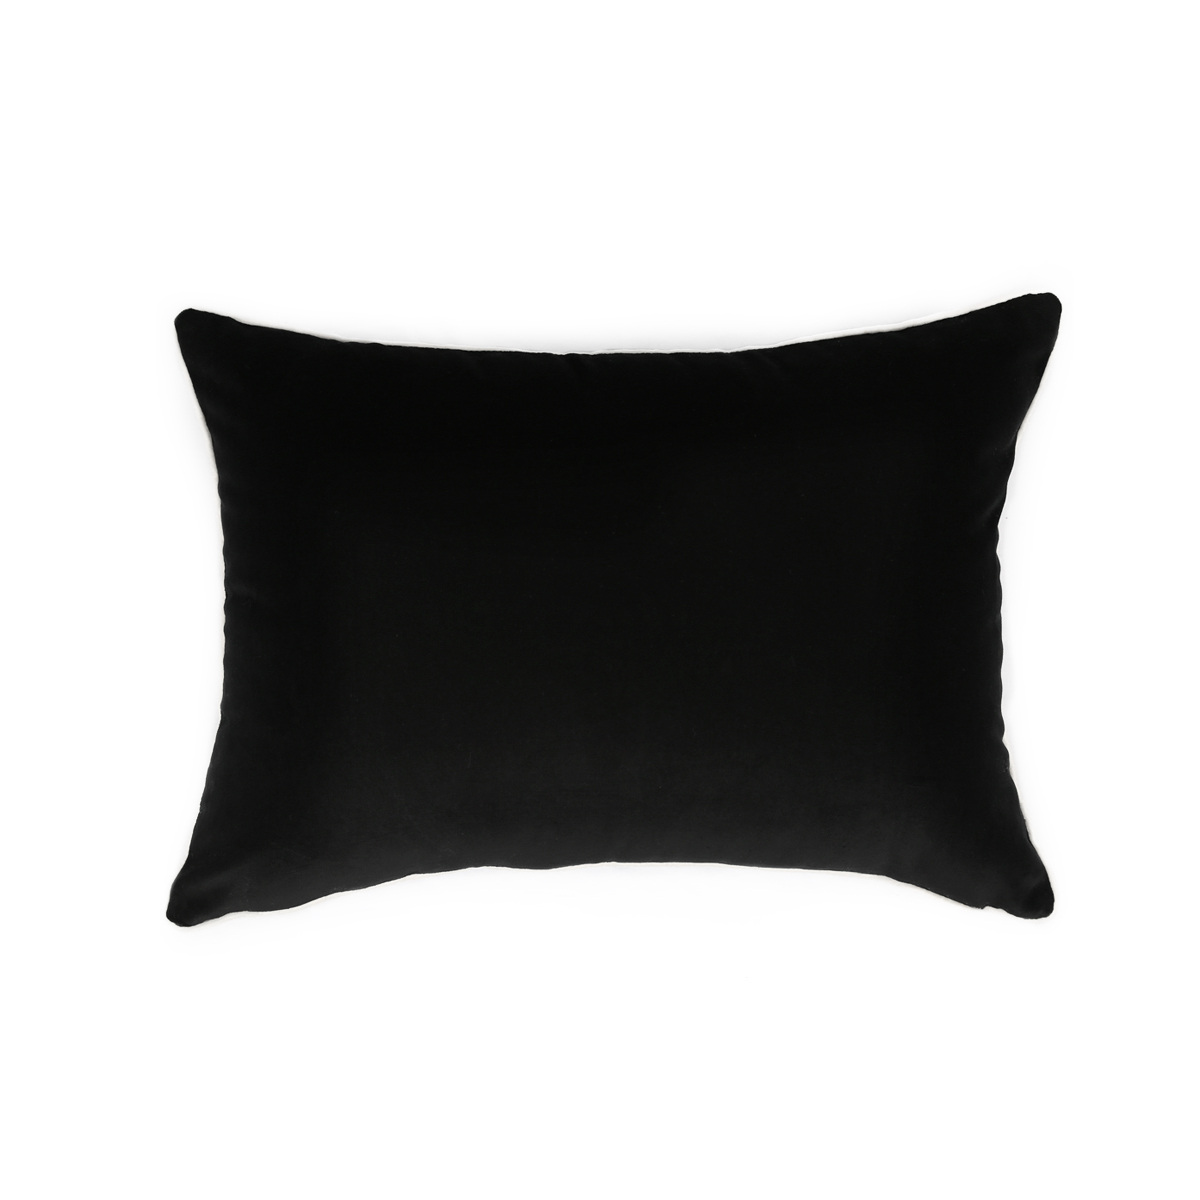 Cushion Double Jeu, Blue / Black Radish - 55 x 40 cm - Cotton velvet - image 6